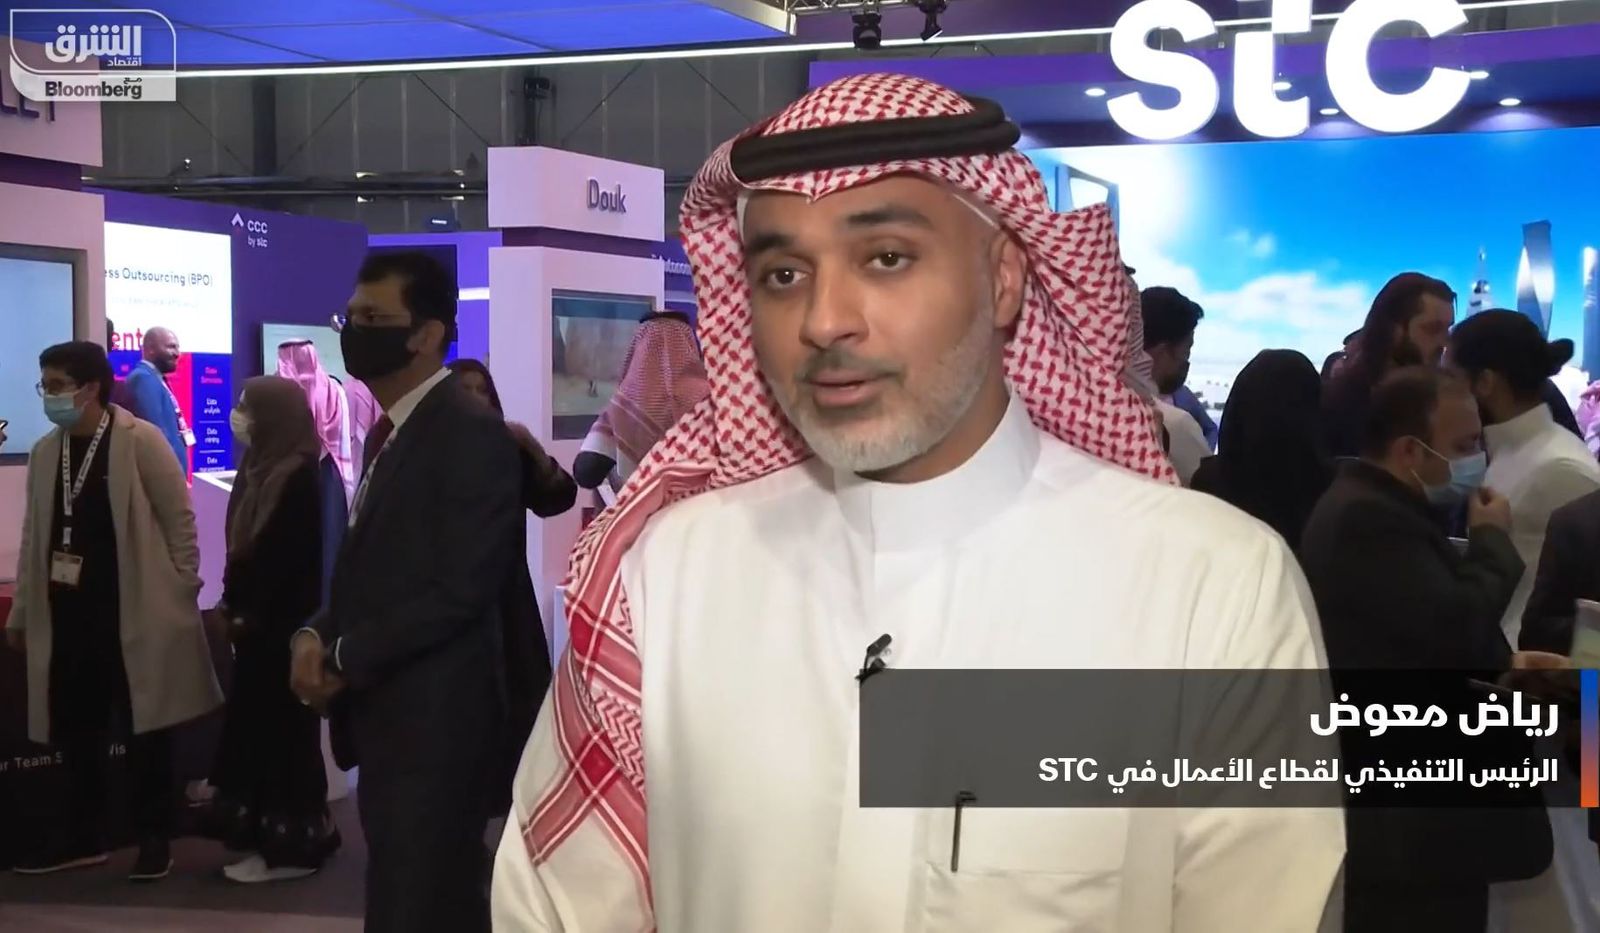 stc السعودية توقِّع أكثر من 10 اتفاقيات مع شركات تقنية عالمية